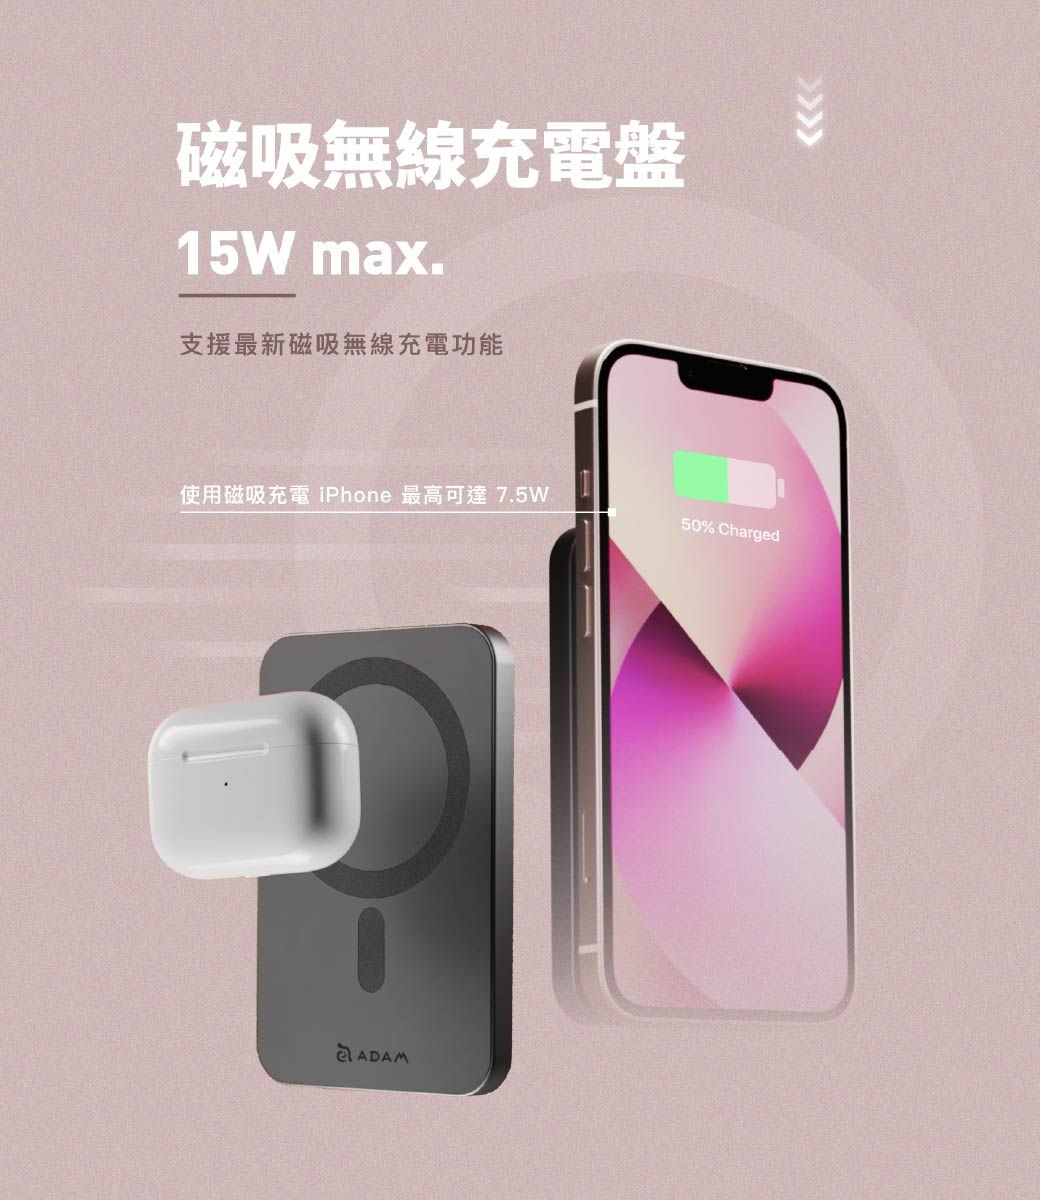 磁吸無線充電盤15W max.支援最新磁吸無線充電功能使用磁吸充電 iPhone 最高可達 7.5WADAM50% Charged